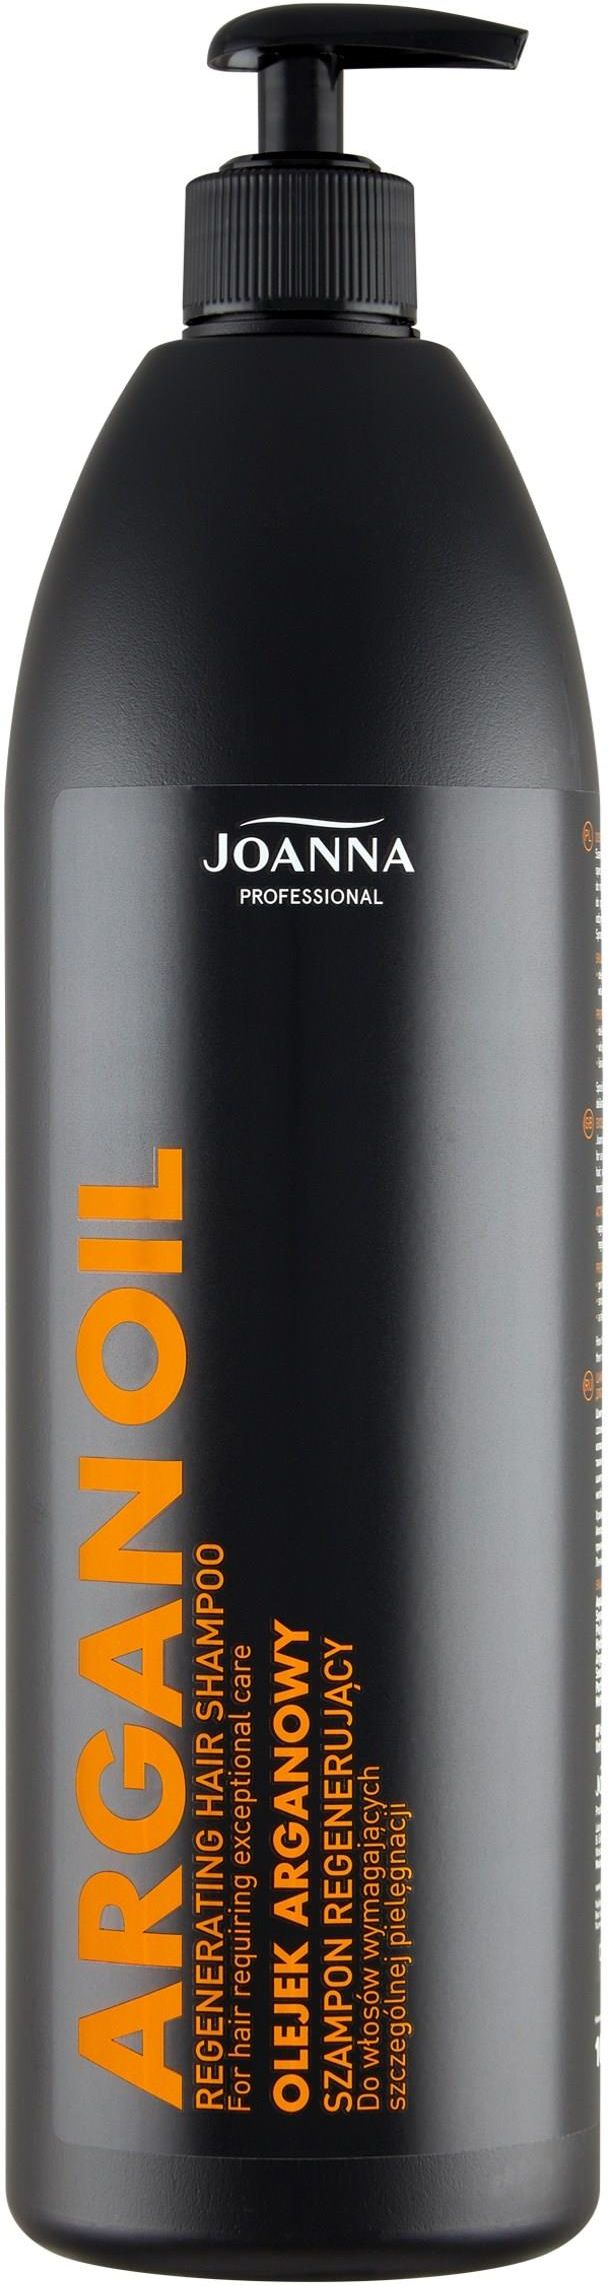 szampon joanna professional z olejkiem arganowym opinie